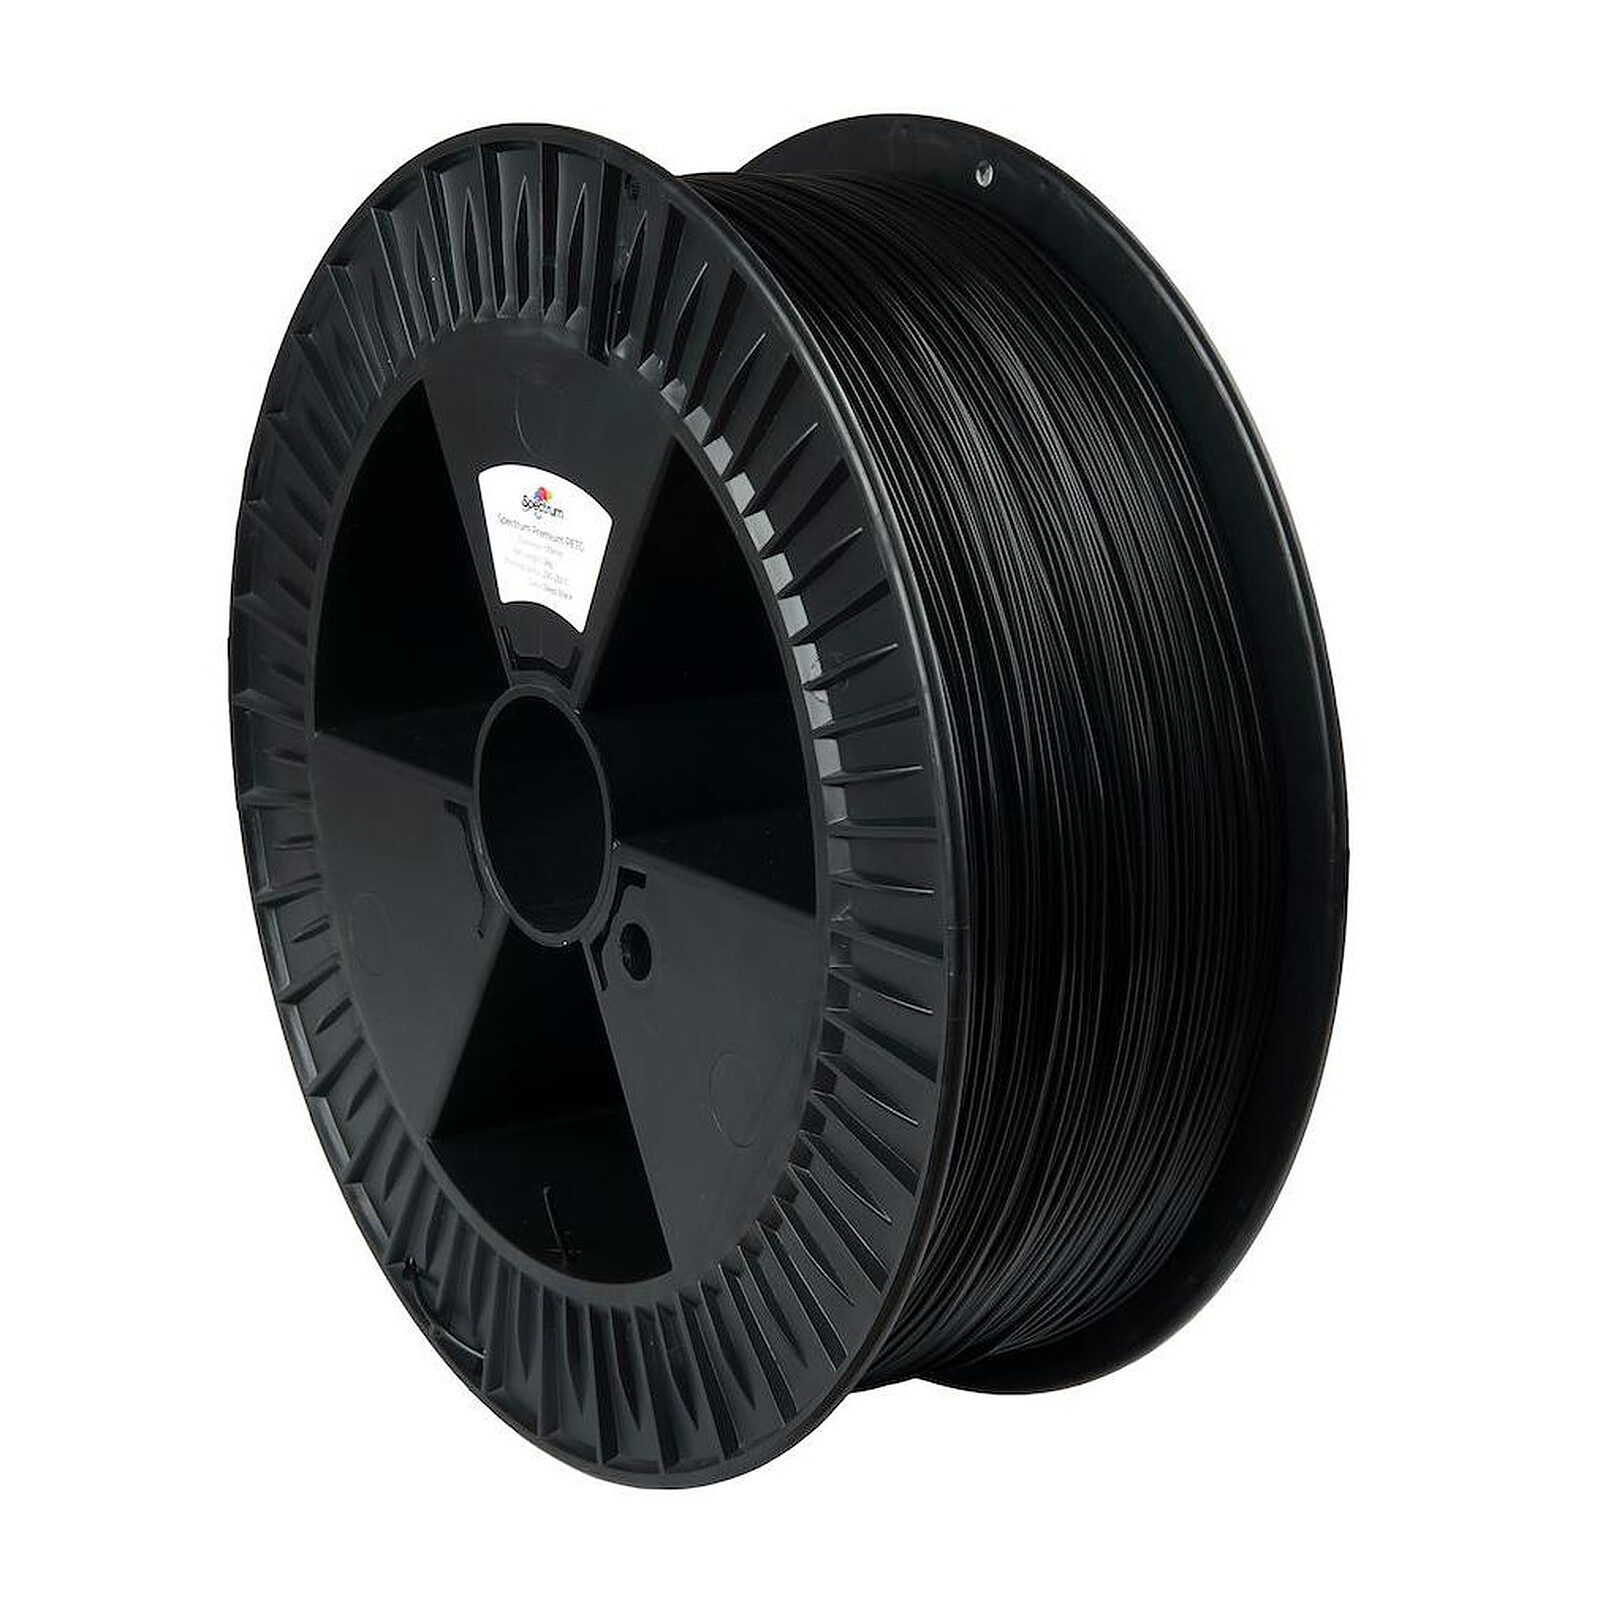 Spectrum Premium PLA noir (deep black) 1,75 mm 2kg - Filament 3D